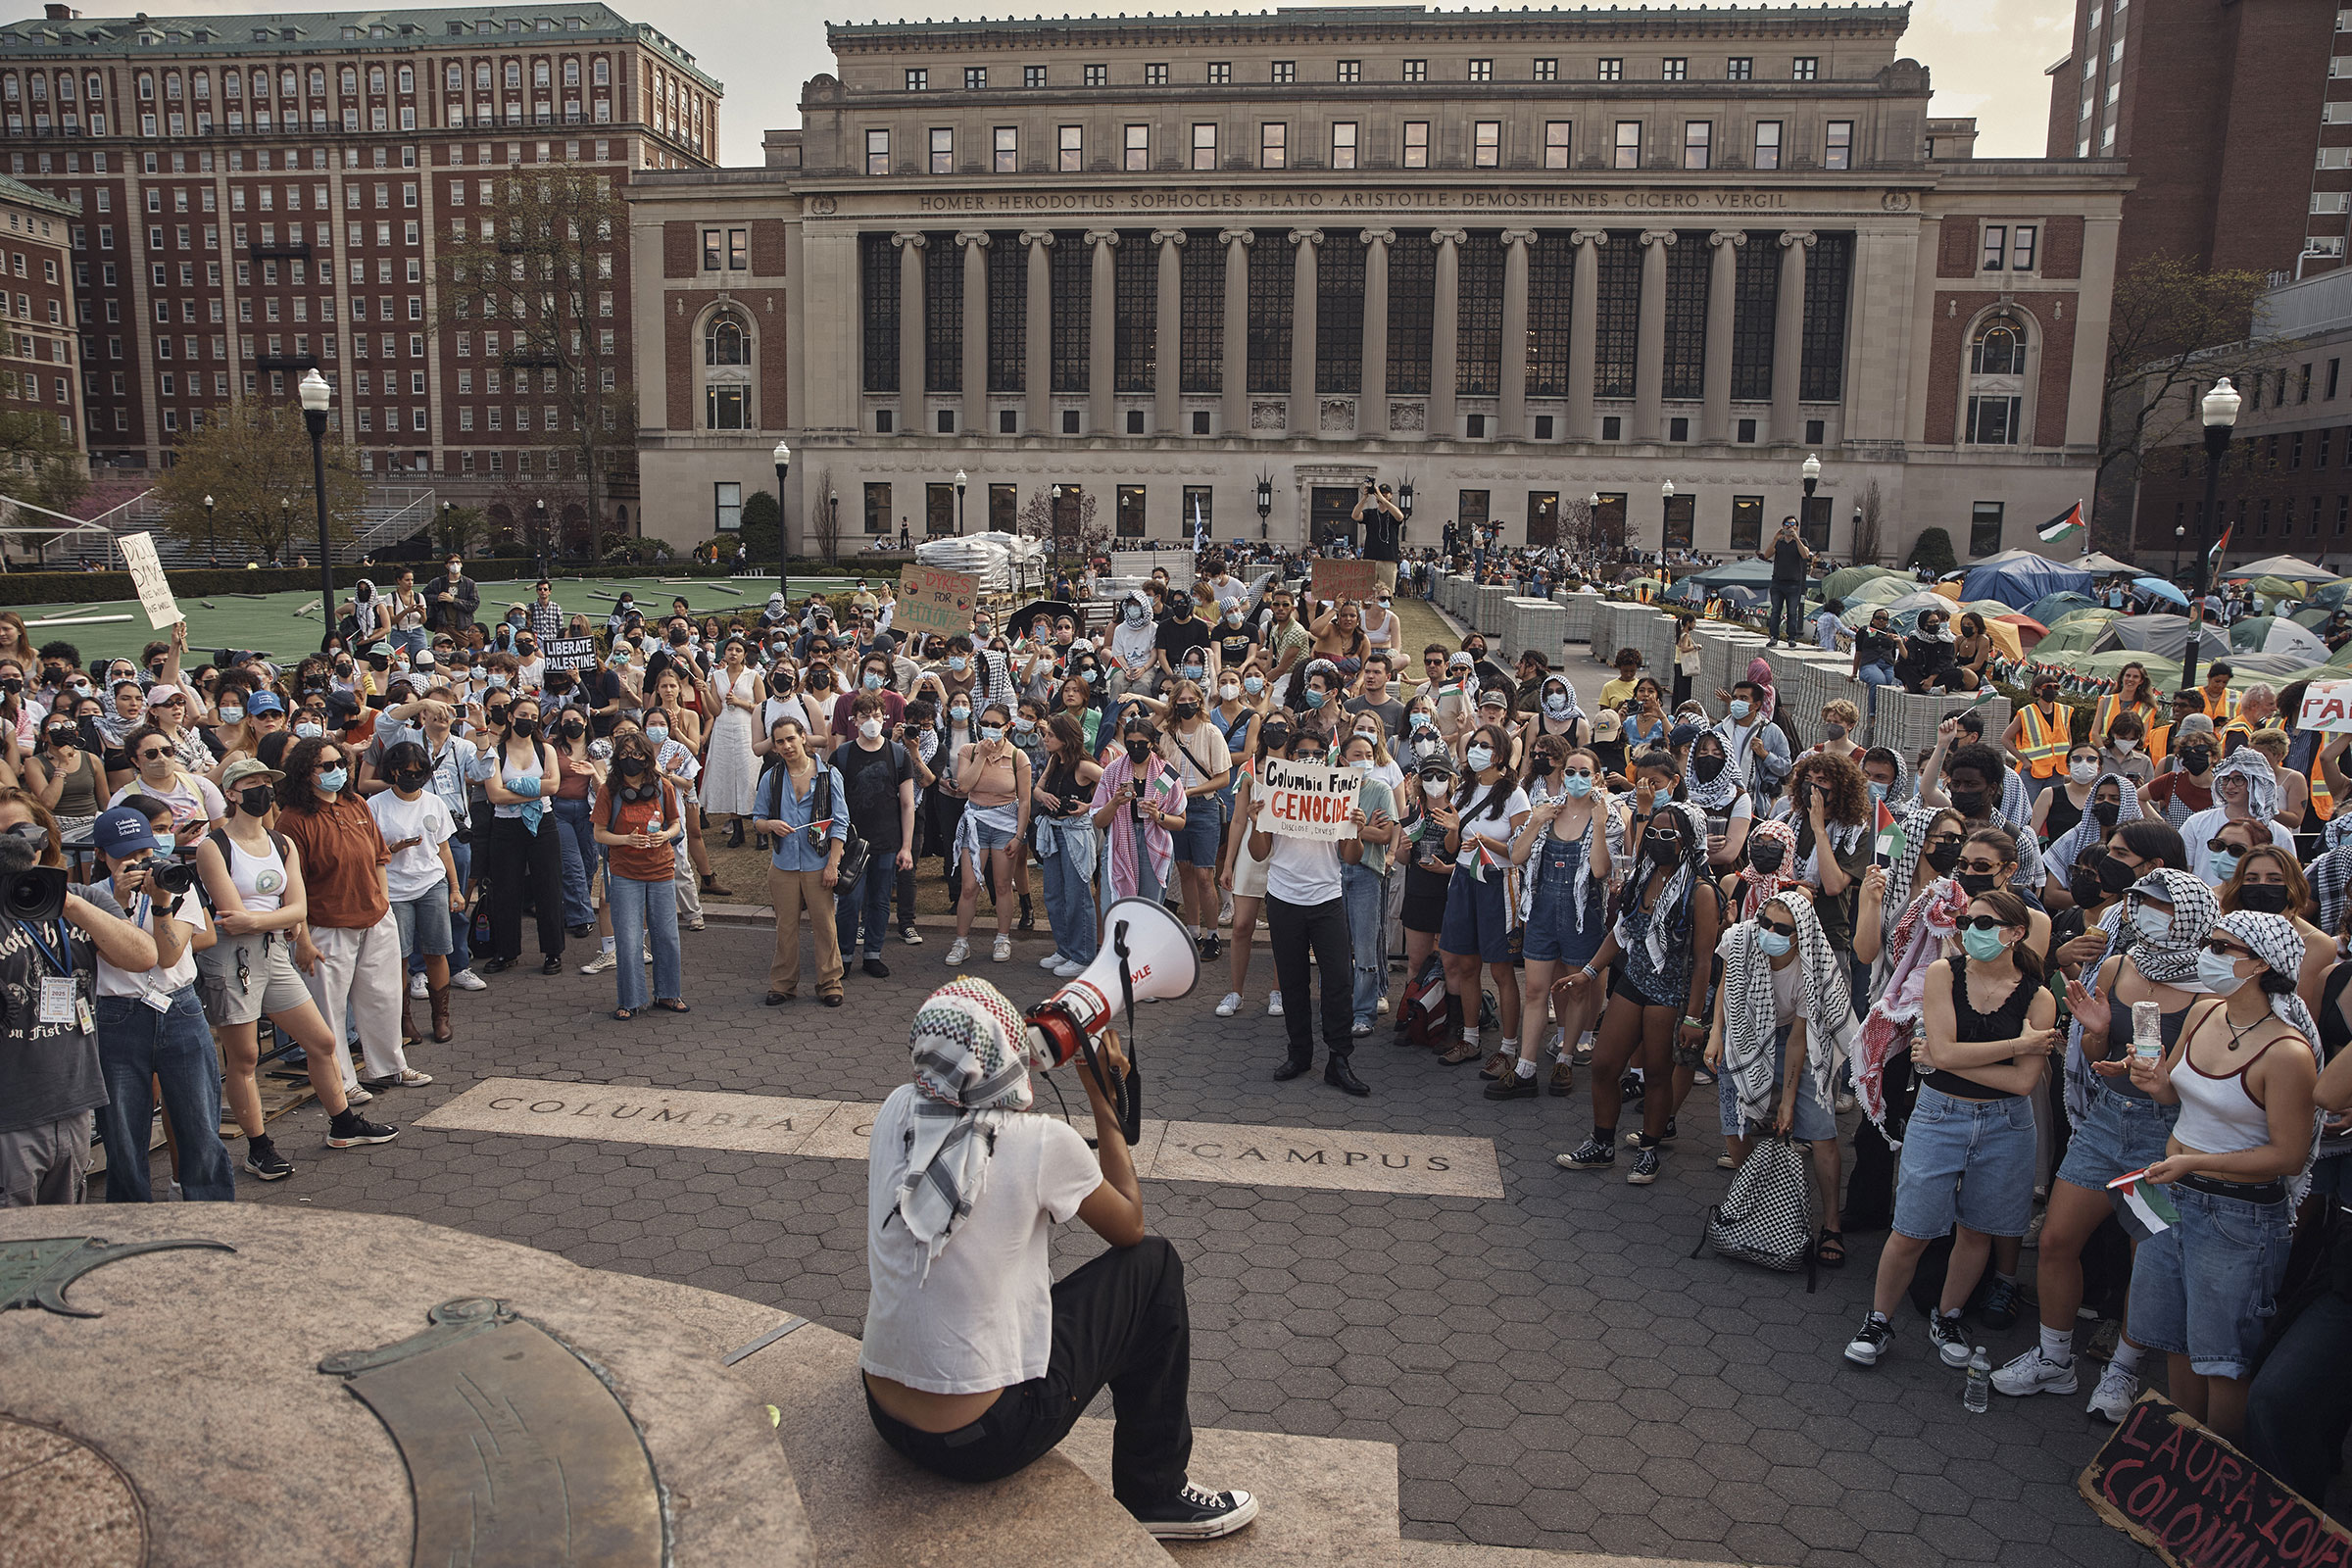 Những người biểu tình lắng nghe một diễn giả trong trại biểu tình ủng hộ Palestine trên khuôn viên trường Đại học Columbia tại Thành phố New York, vào ngày 29 tháng 4.